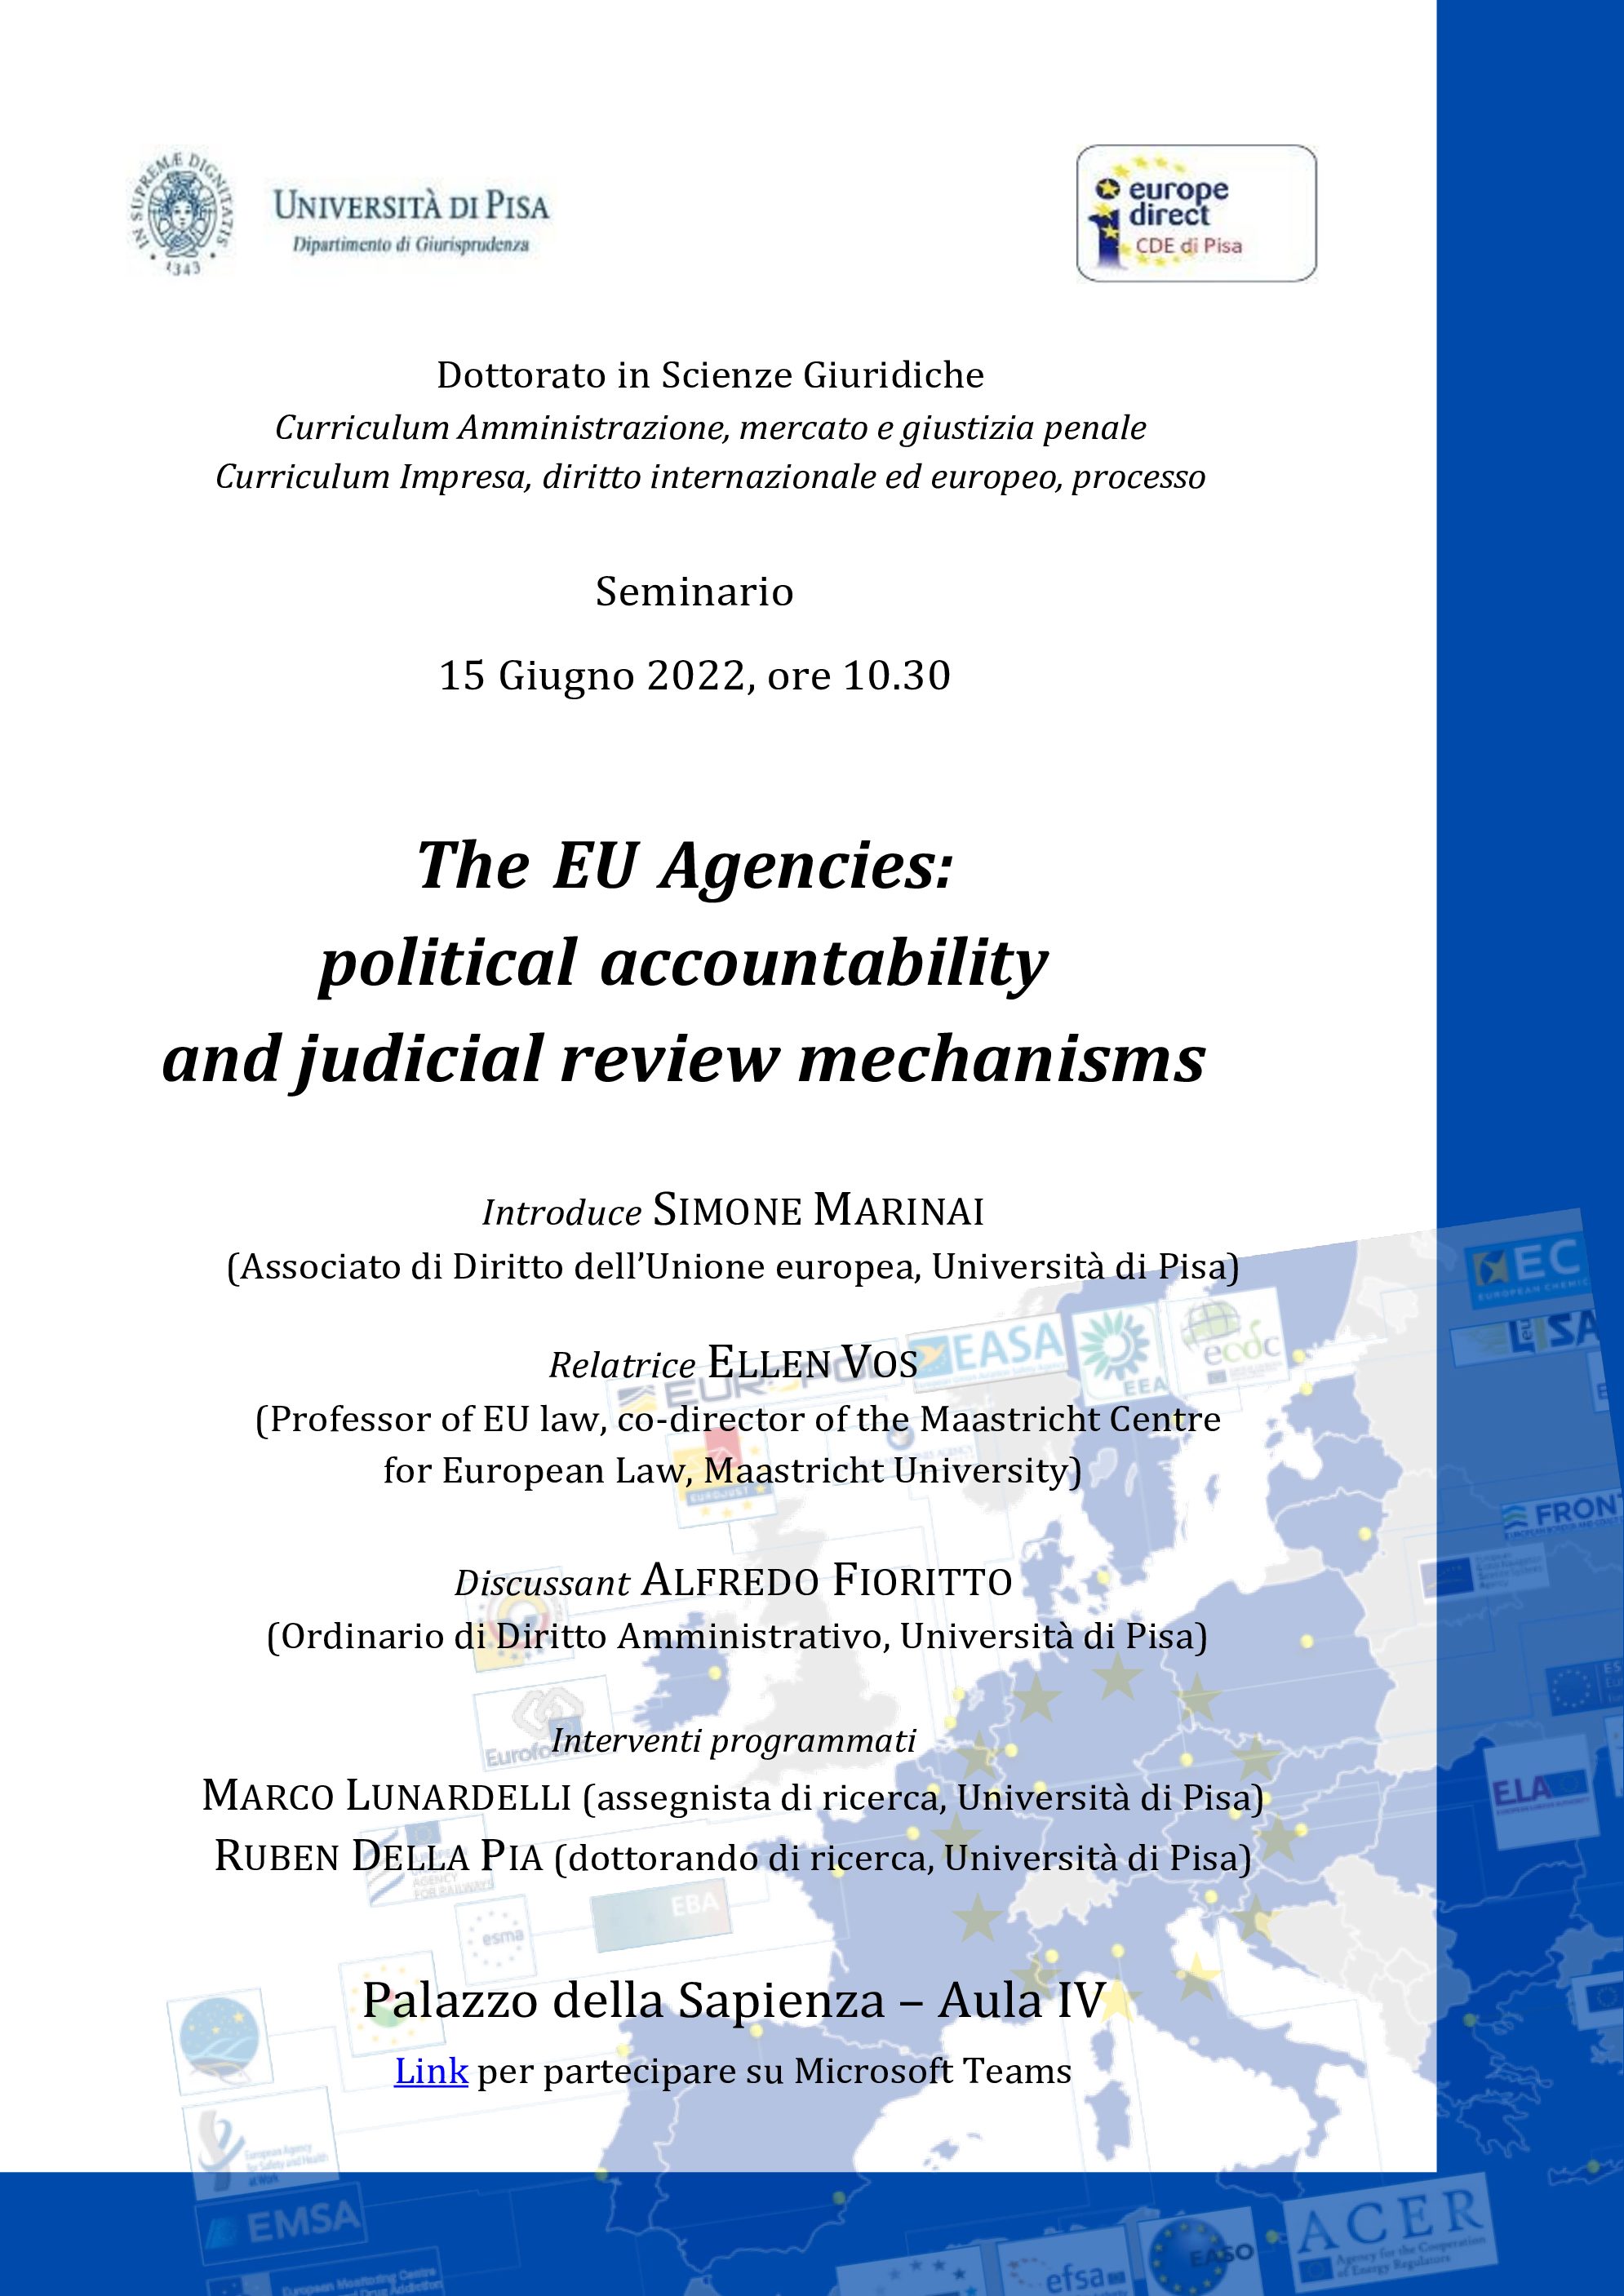 The EU Agencies: political accountability and judicial review mechanisms